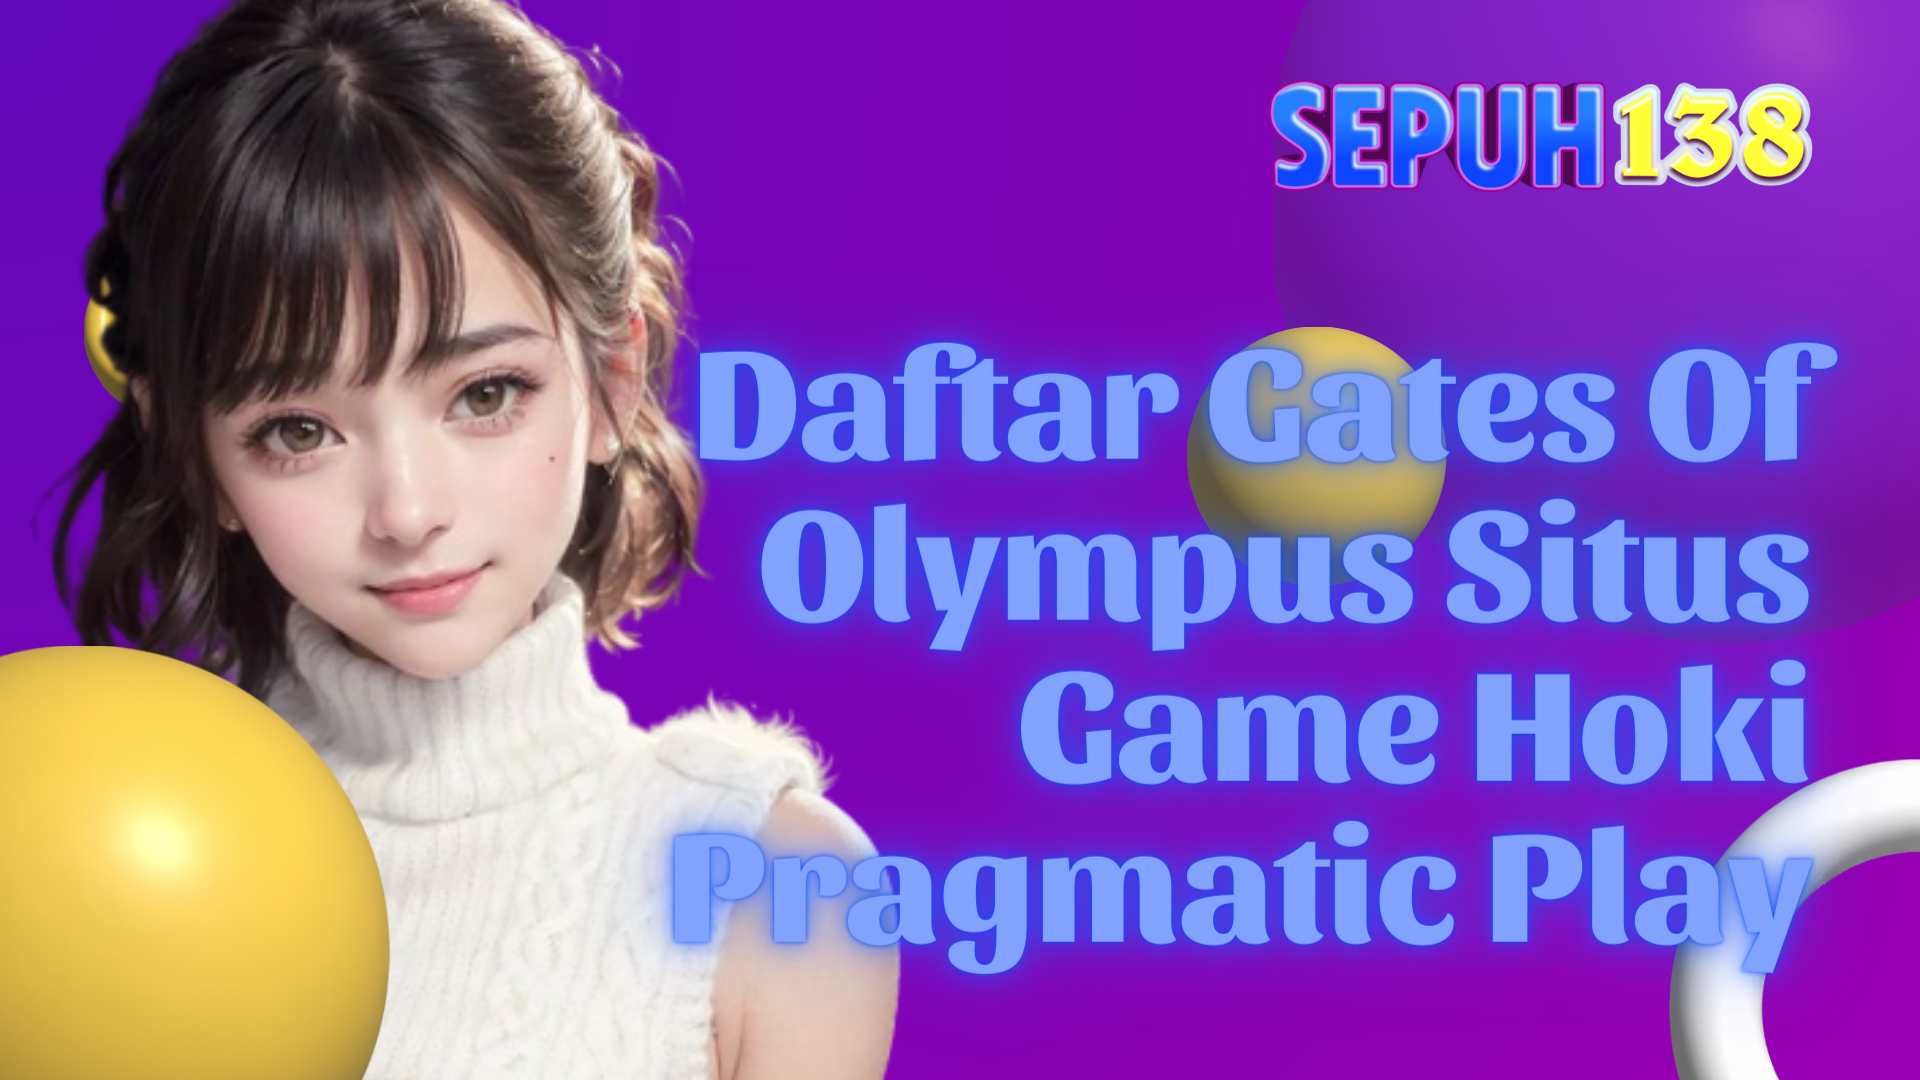 Daftar Gates Of Olympus Situs Game Hoki Pragmatic Play